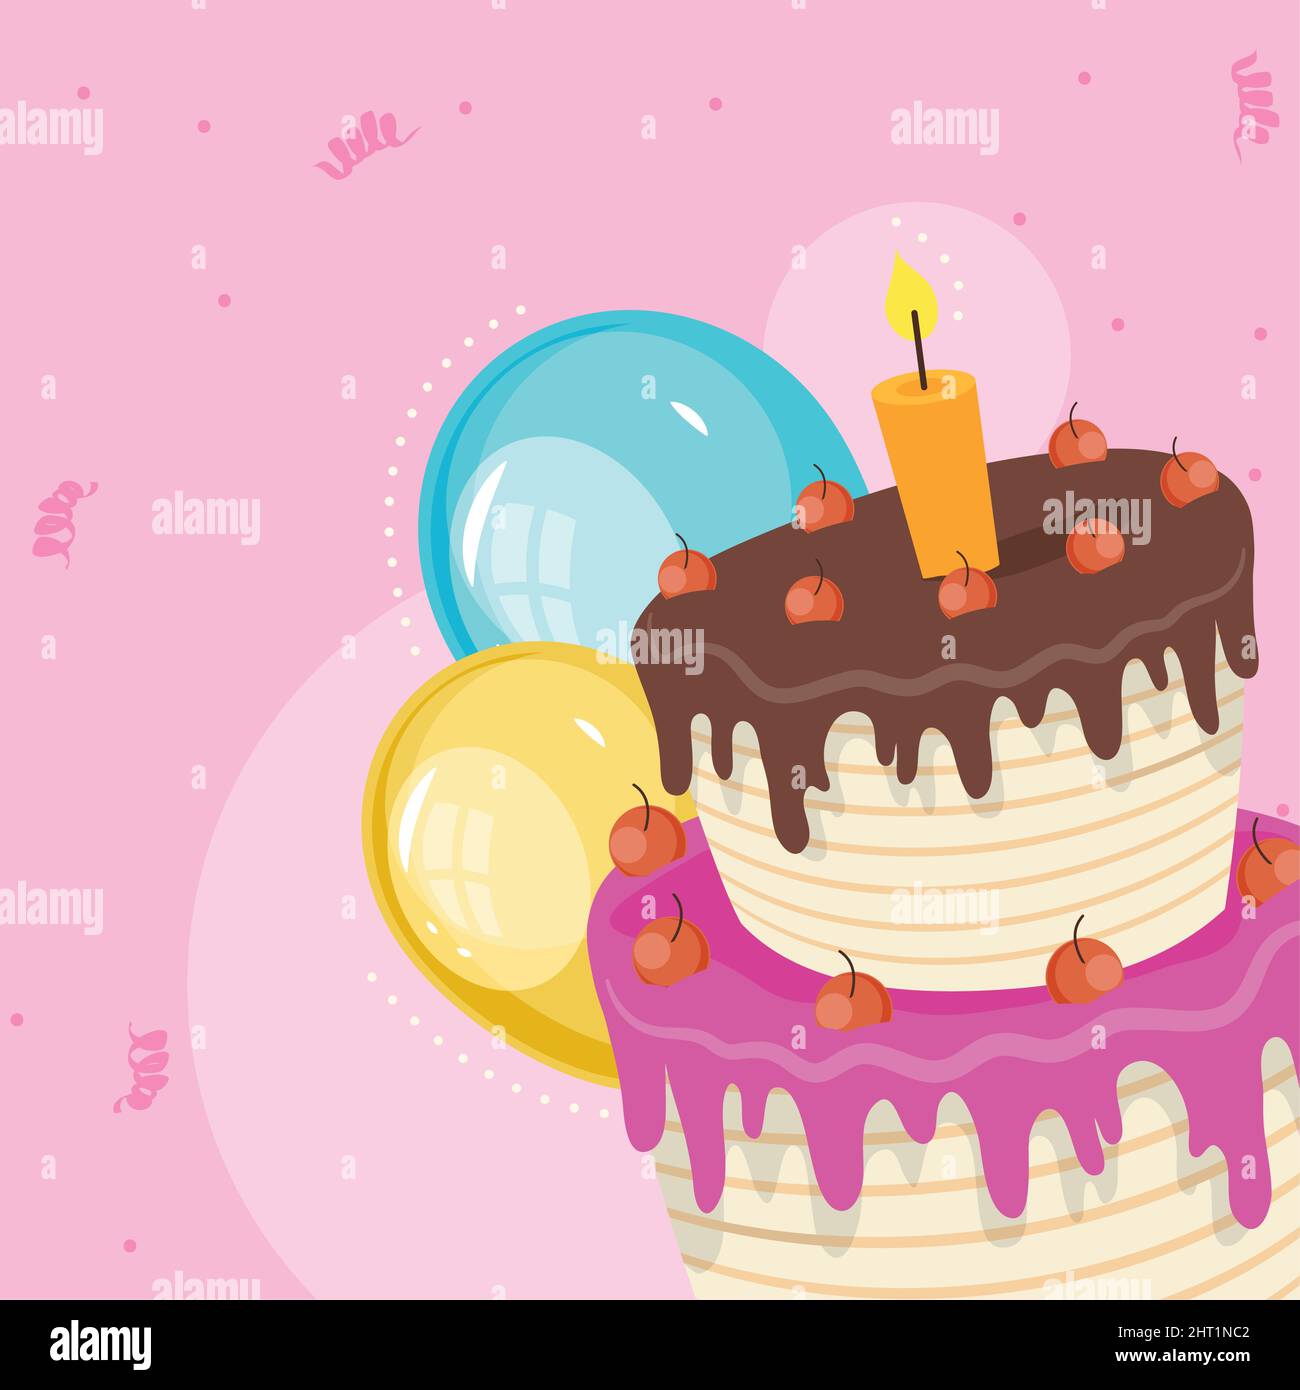 Những chiếc bánh sinh nhật như một tác phẩm nghệ thuật với bóng bay đầy màu sắc là điểm nhấn để giúp cho hình ảnh trở nên đặc sắc hơn. Vector bánh sinh nhật với bóng bay và hoa lá đầy màu sắc sẽ làm say lòng bất kì ai yêu thích sự vui tươi và trẻ trung.